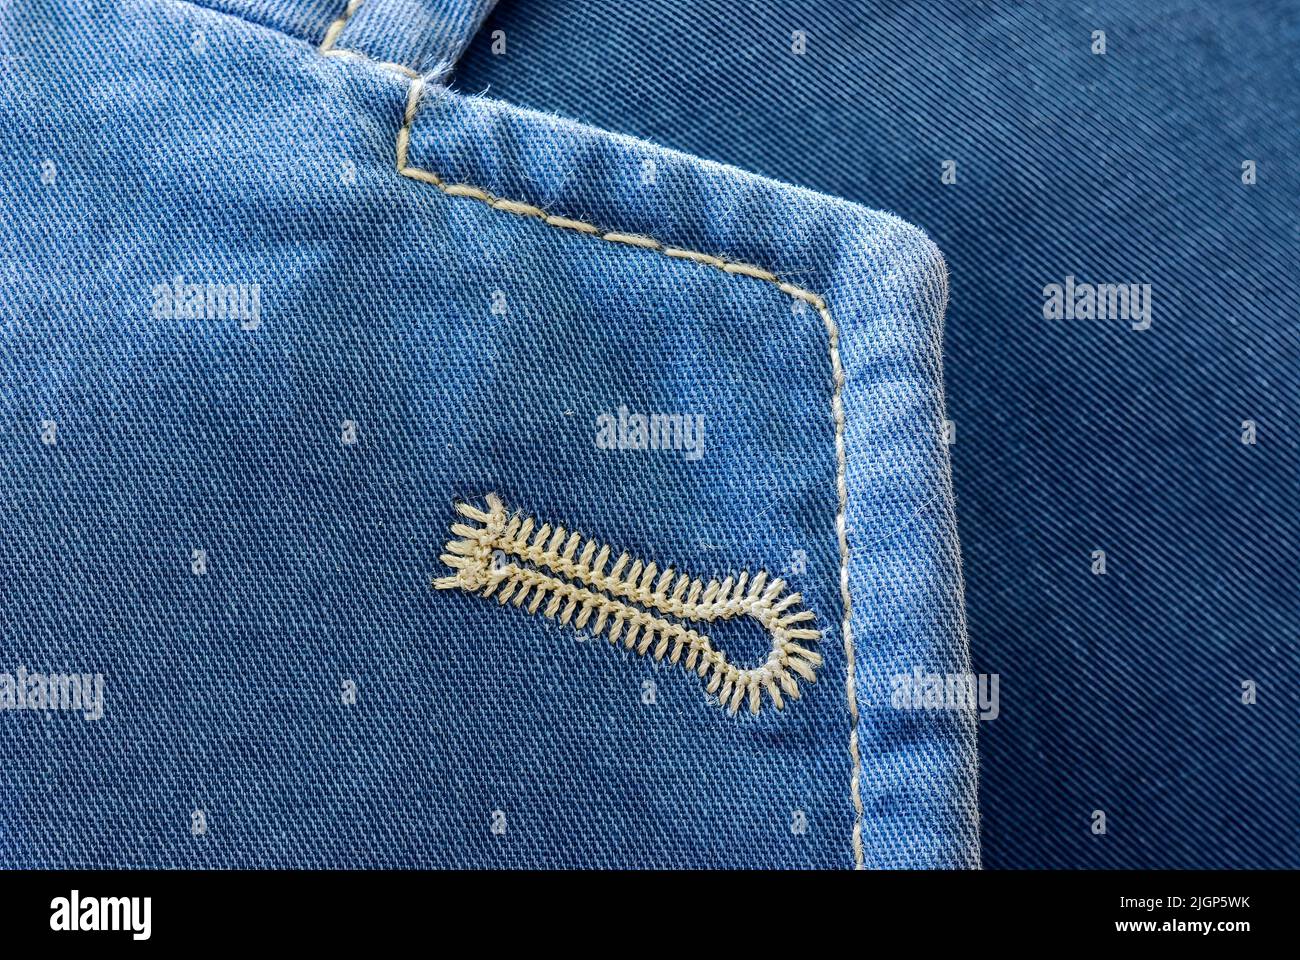 Naturweißes Knopfloch, gestickt auf einer blauen Baumwoll-Sportjacke, Revers mit Spitzenmuster, Nahaufnahme. Hintergrund. Stockfoto